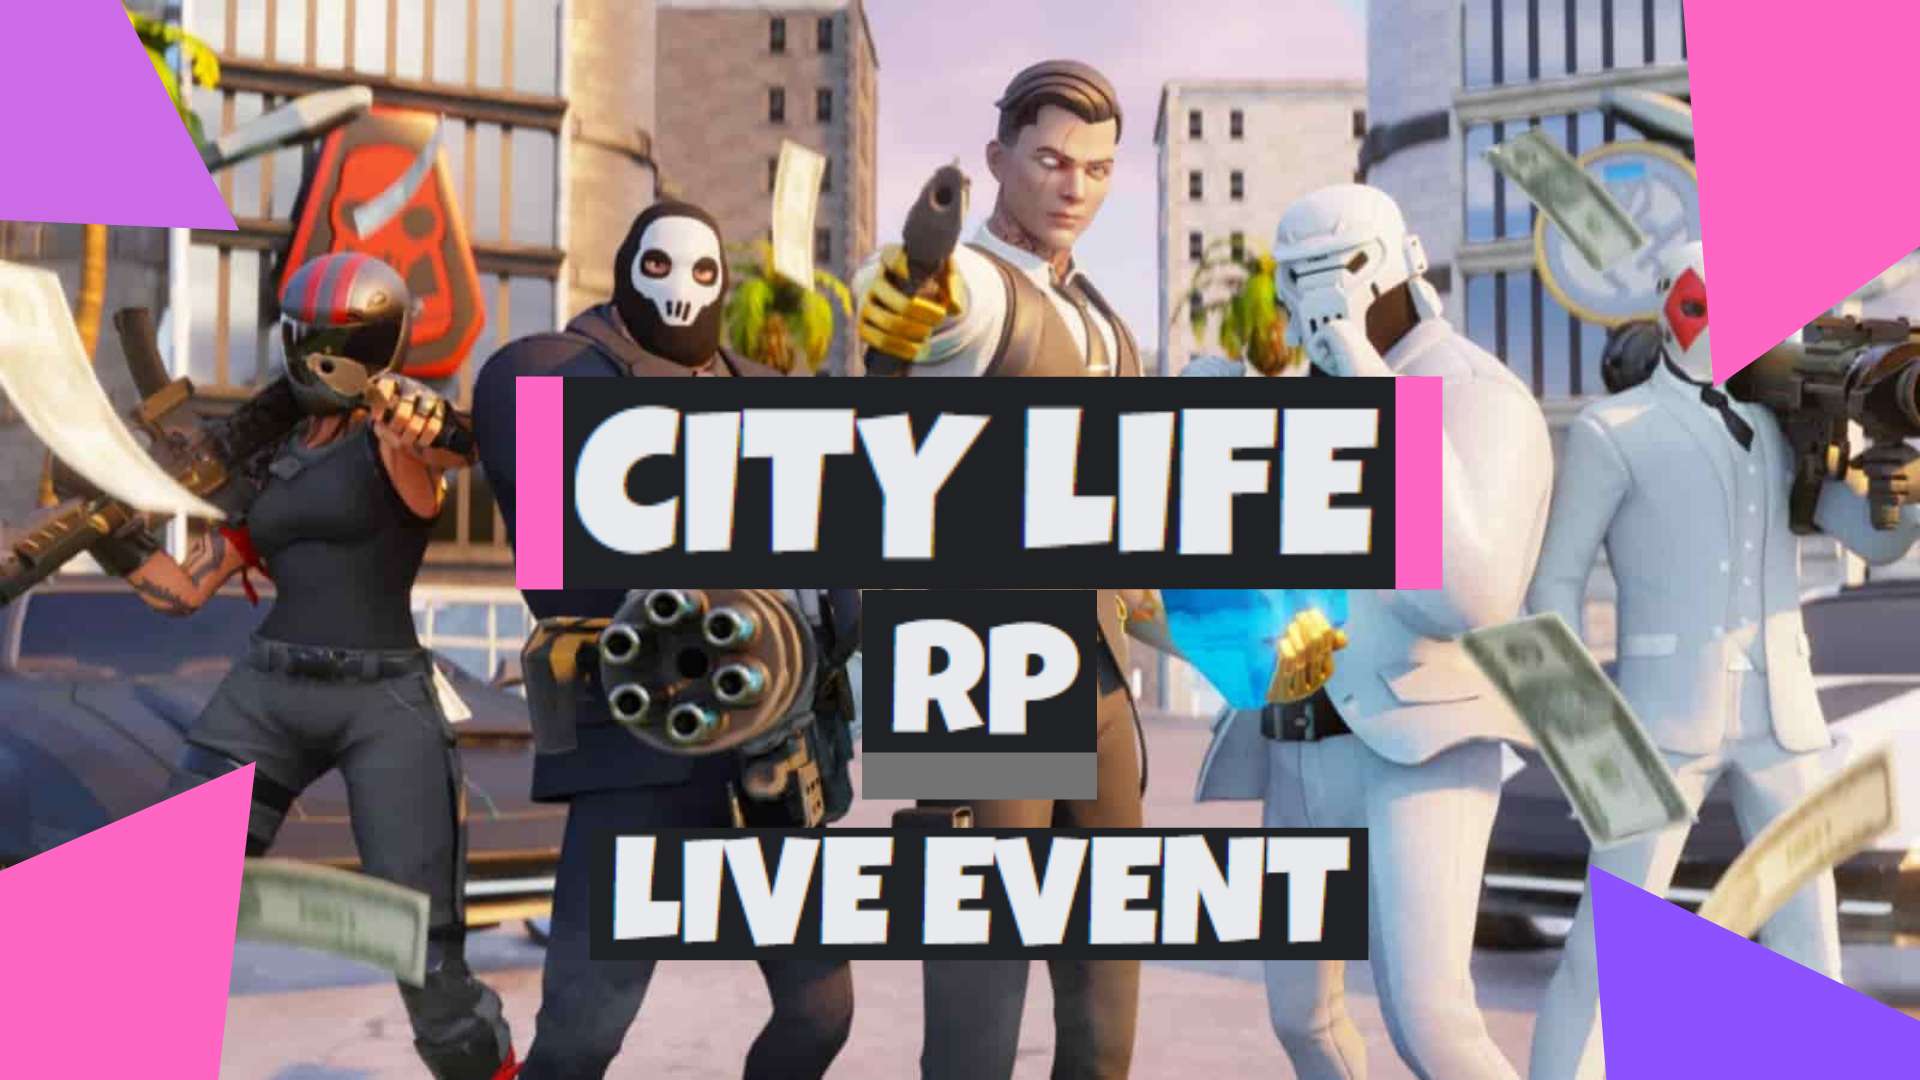 CITY LIFE RP! LIVE EVENT!